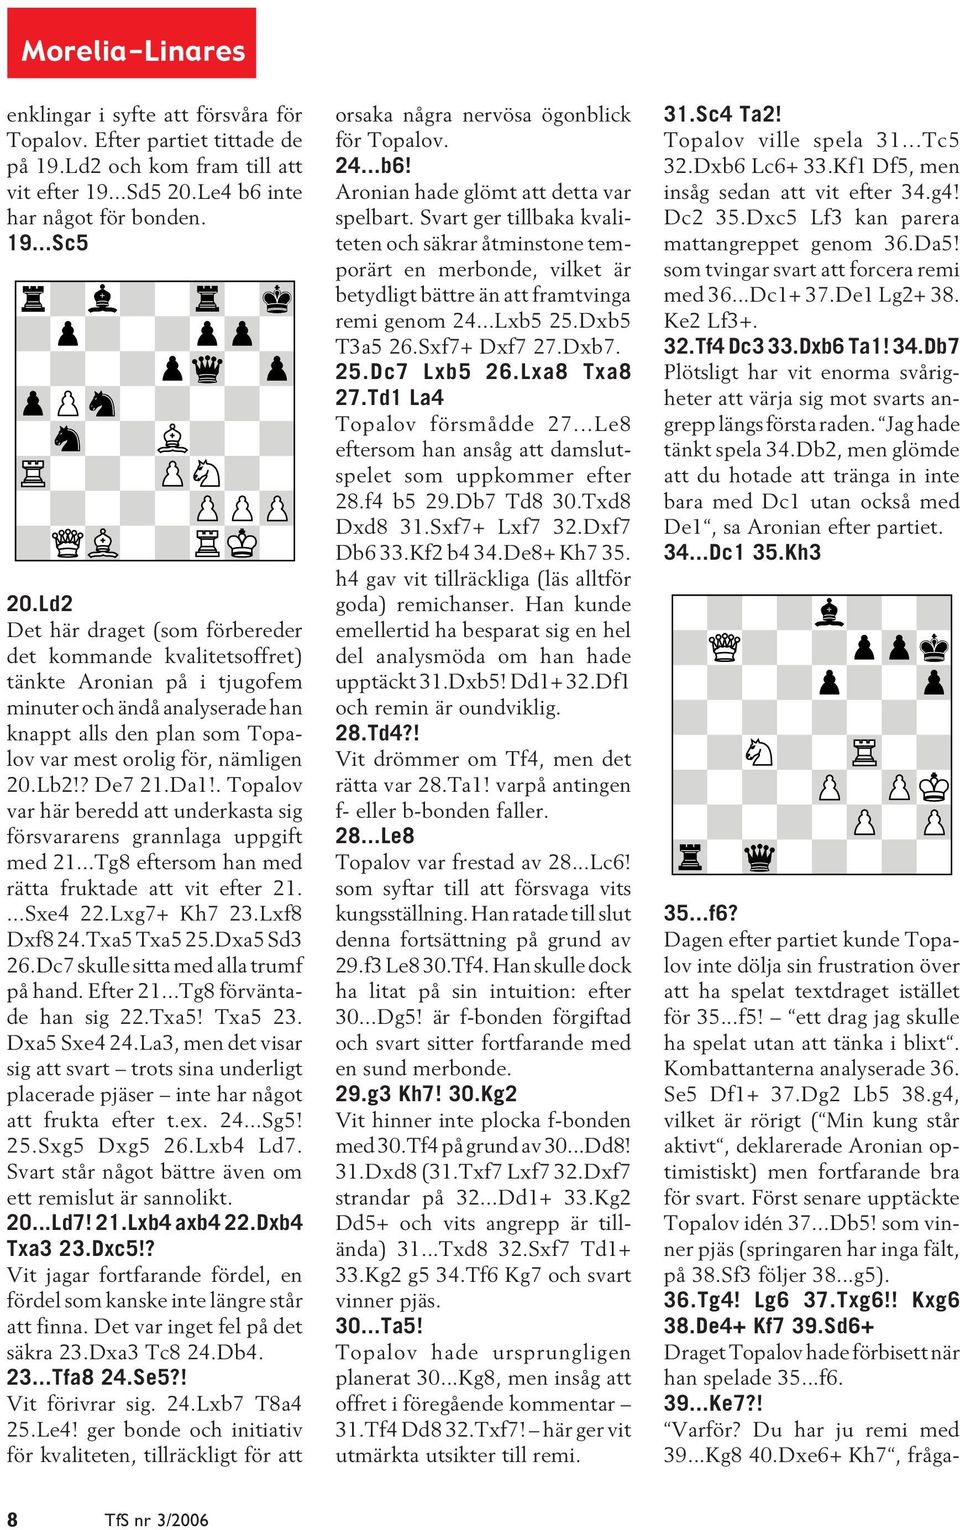 ? De7 21.Da1!. Topalov var här beredd att underkasta sig försvararens grannlaga uppgift med 21...Tg8 eftersom han med rätta fruktade att vit efter 21....Sxe4 22.Lxg7+ Kh7 23.Lxf8 Dxf8 24.Txa5 Txa5 25.